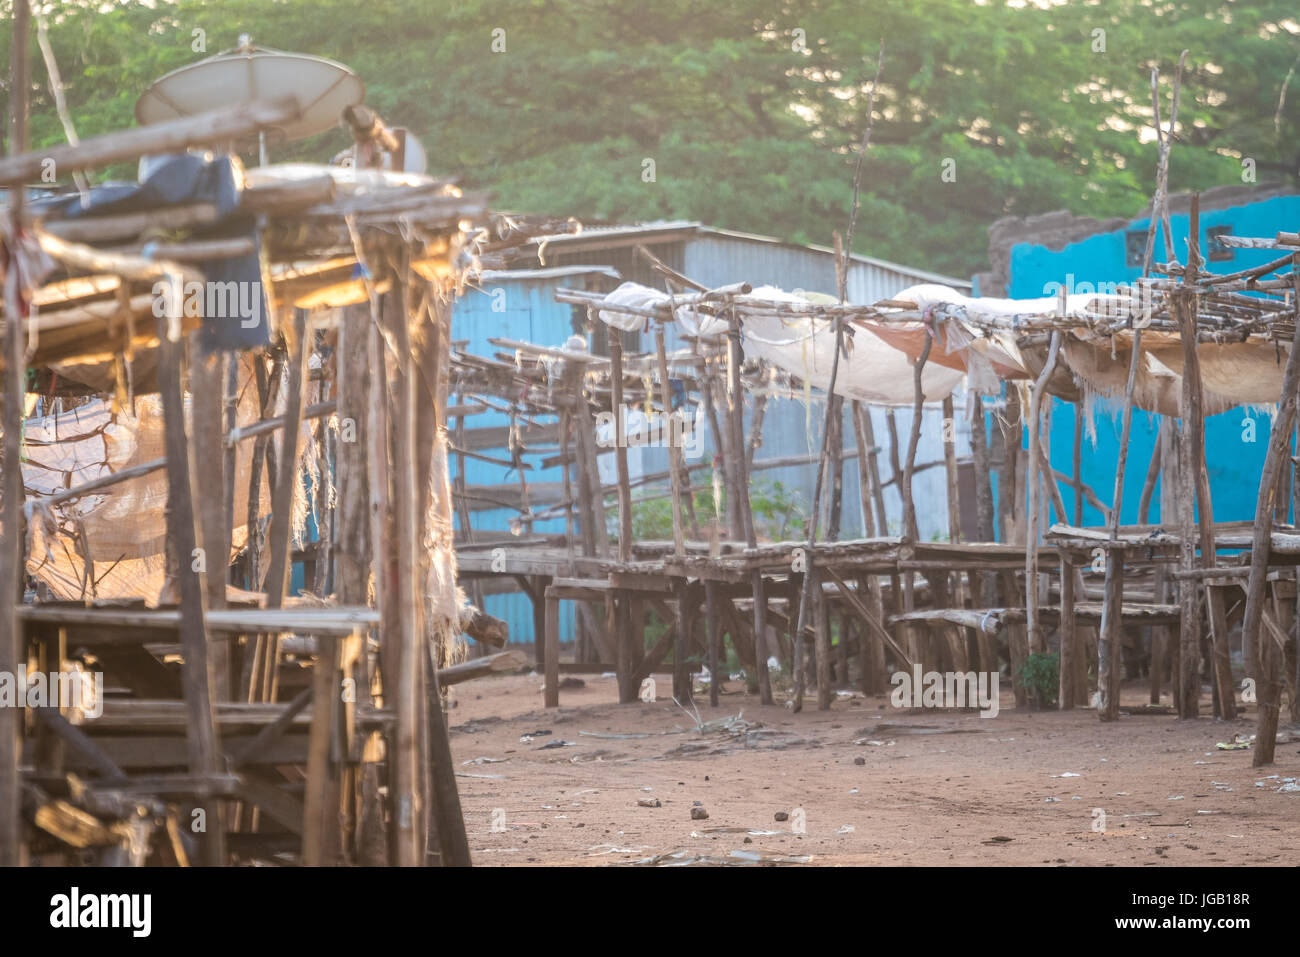 Mercado al aire libre - muy temprano en la mañana en taveta, Kenya, Africa. Foto de stock